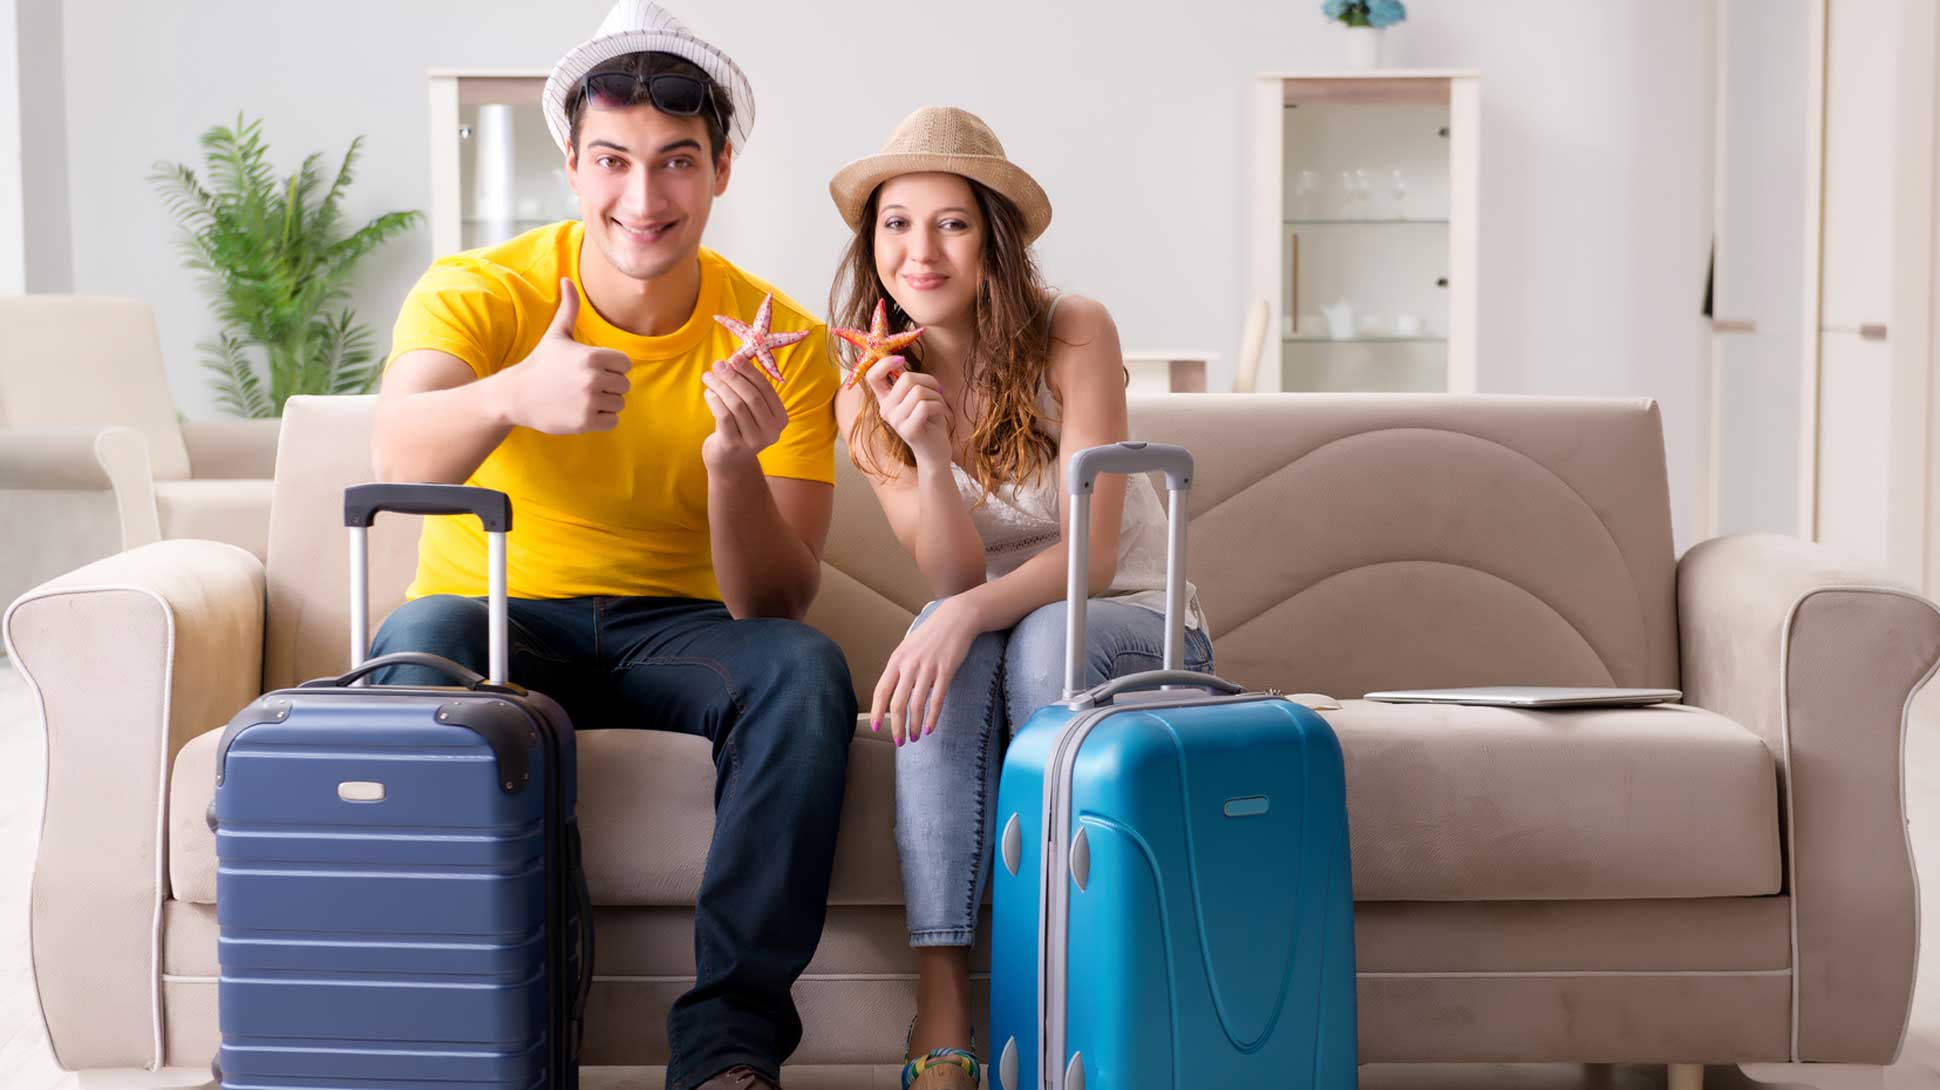 Семейная пара в отпуске. Турист с чемоданом. Человек с чемоданом. Чемодан в квартире. Семья собирается в отпуск.